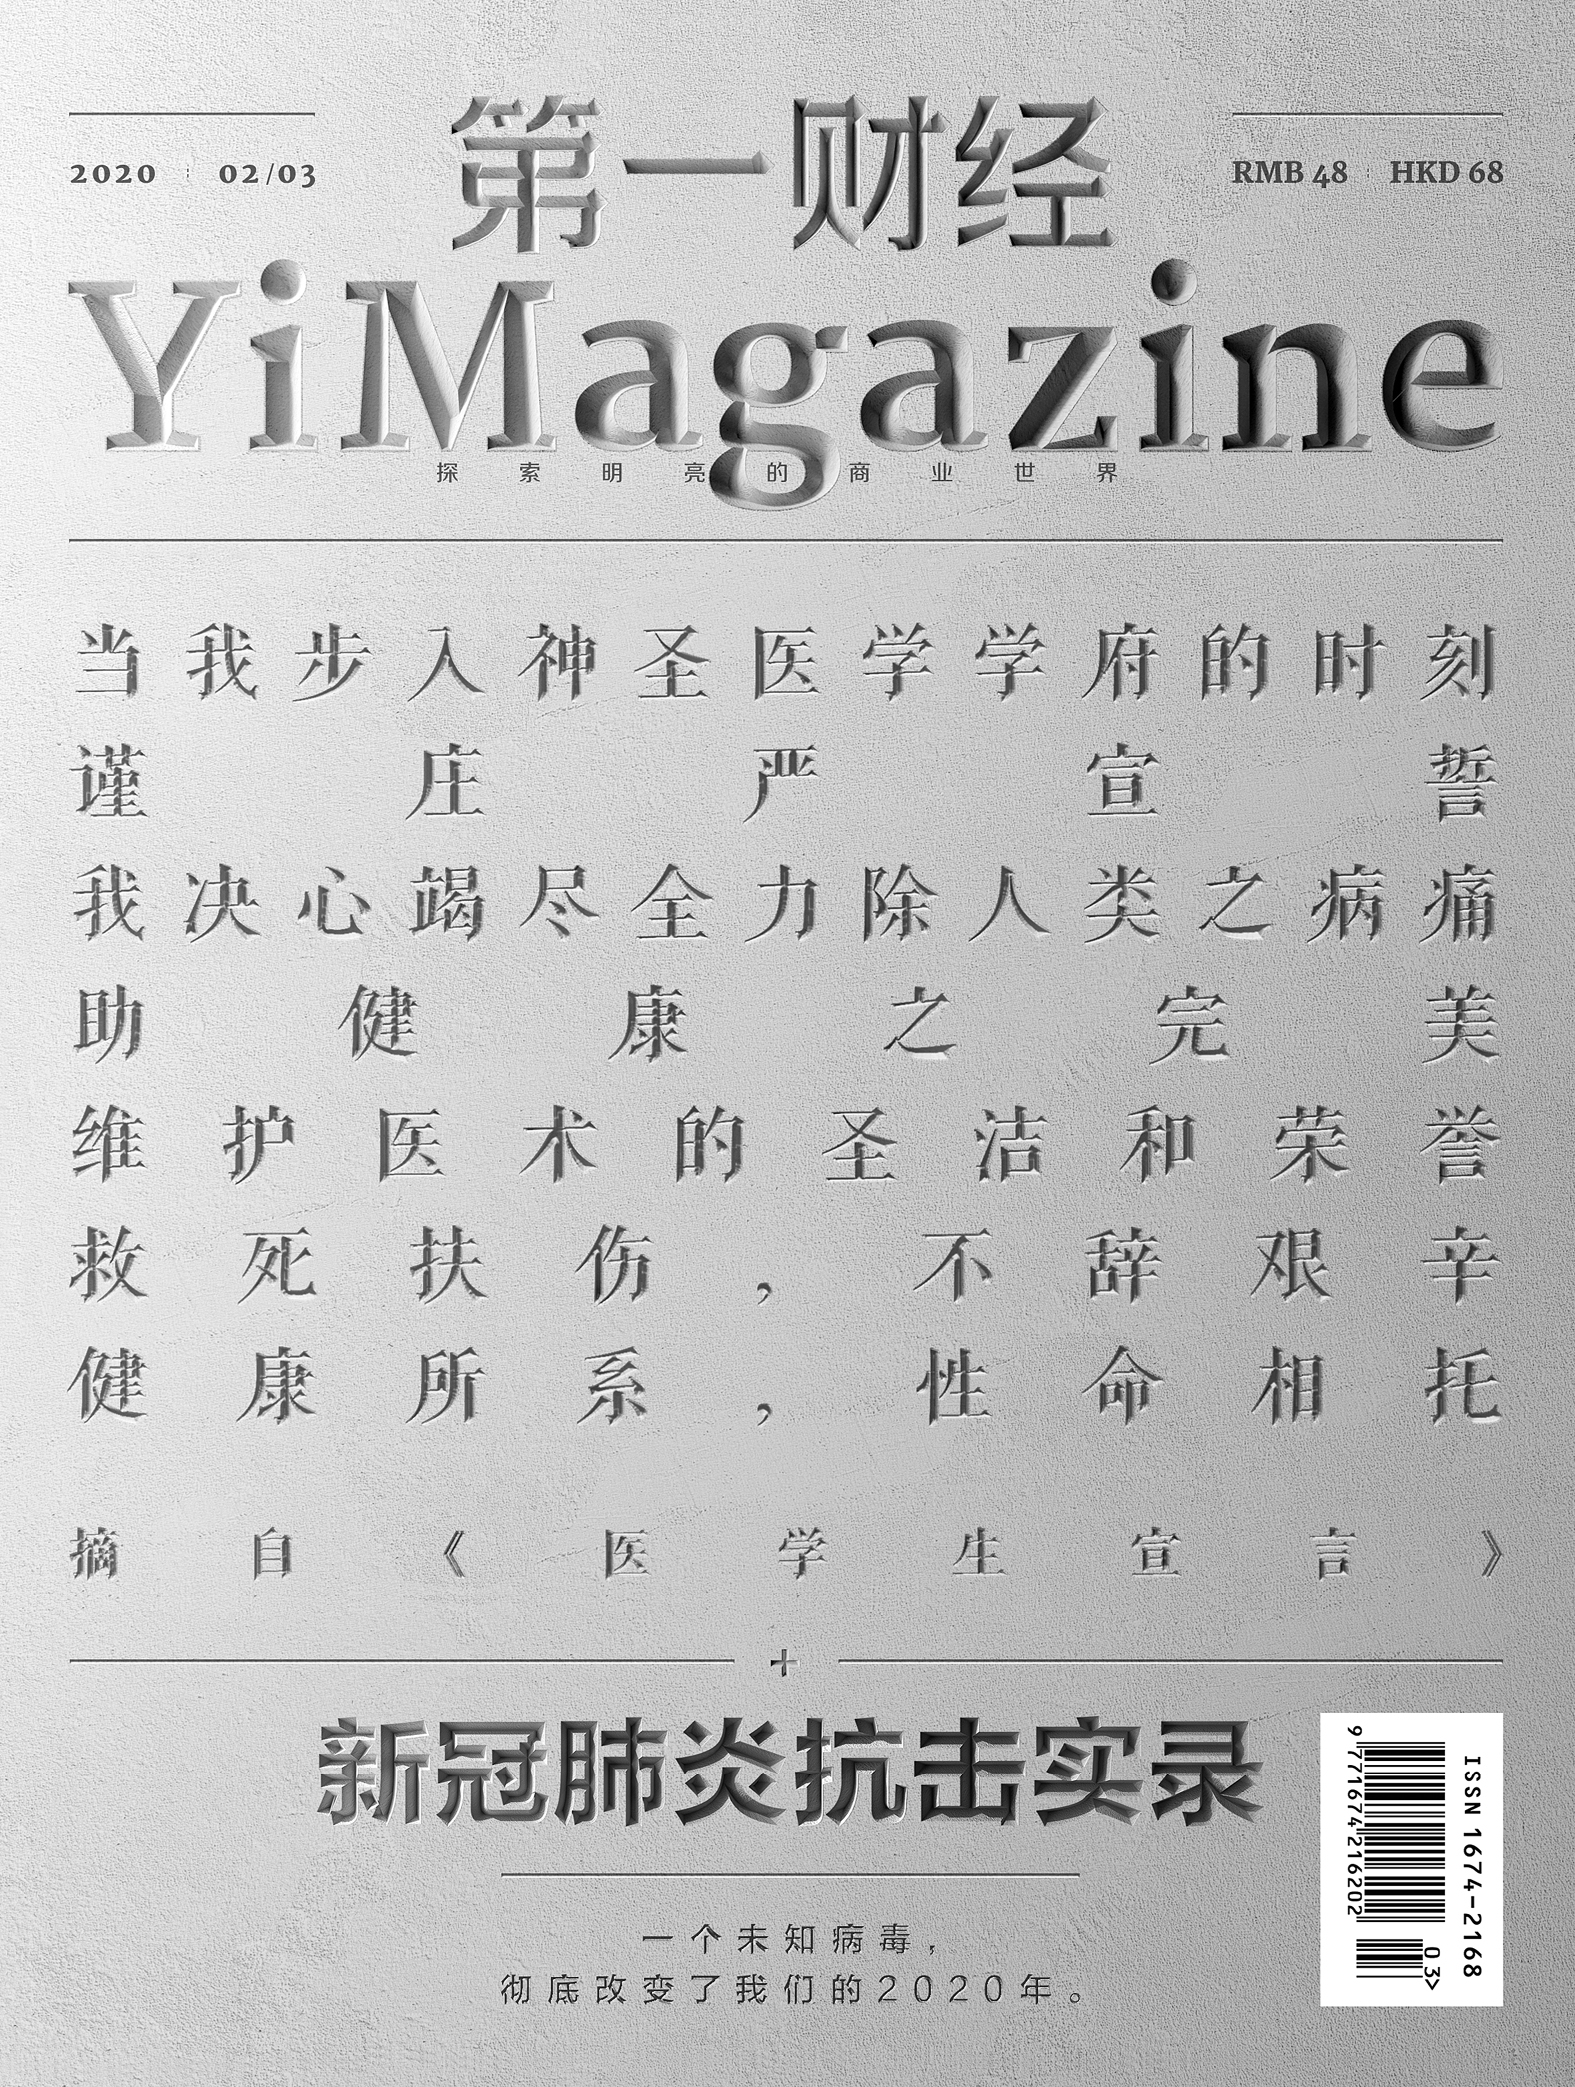 《第一财经》YiMagazine 2020年第02/03期合刊